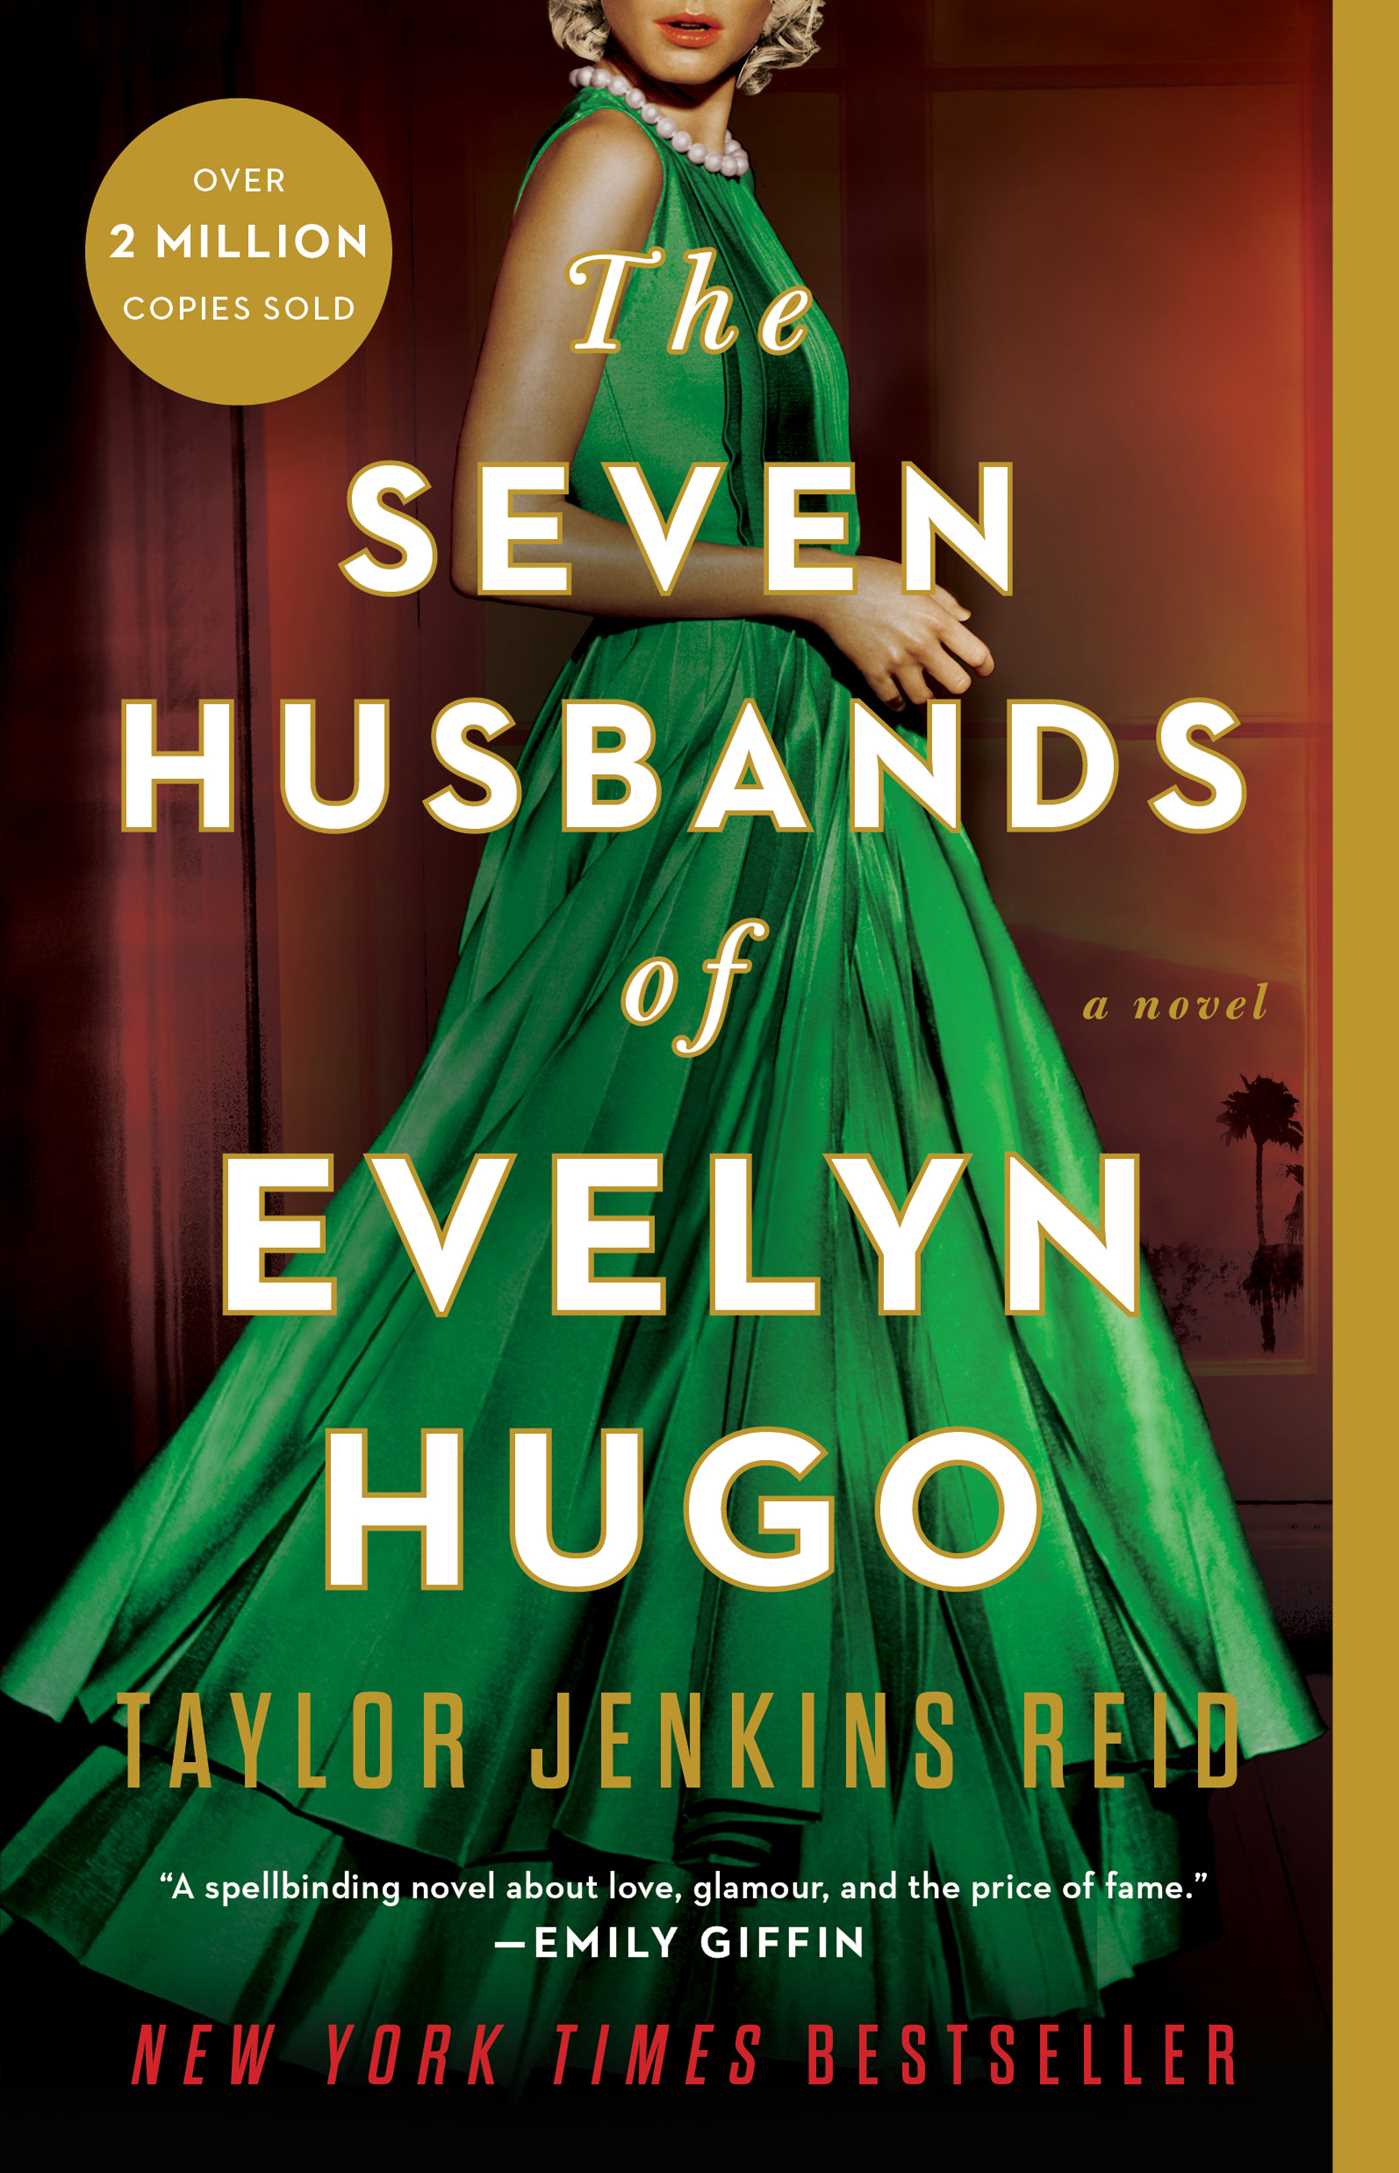 Taylor Jenkins Reid's The Seven Husbands Of Evelyn Hugo